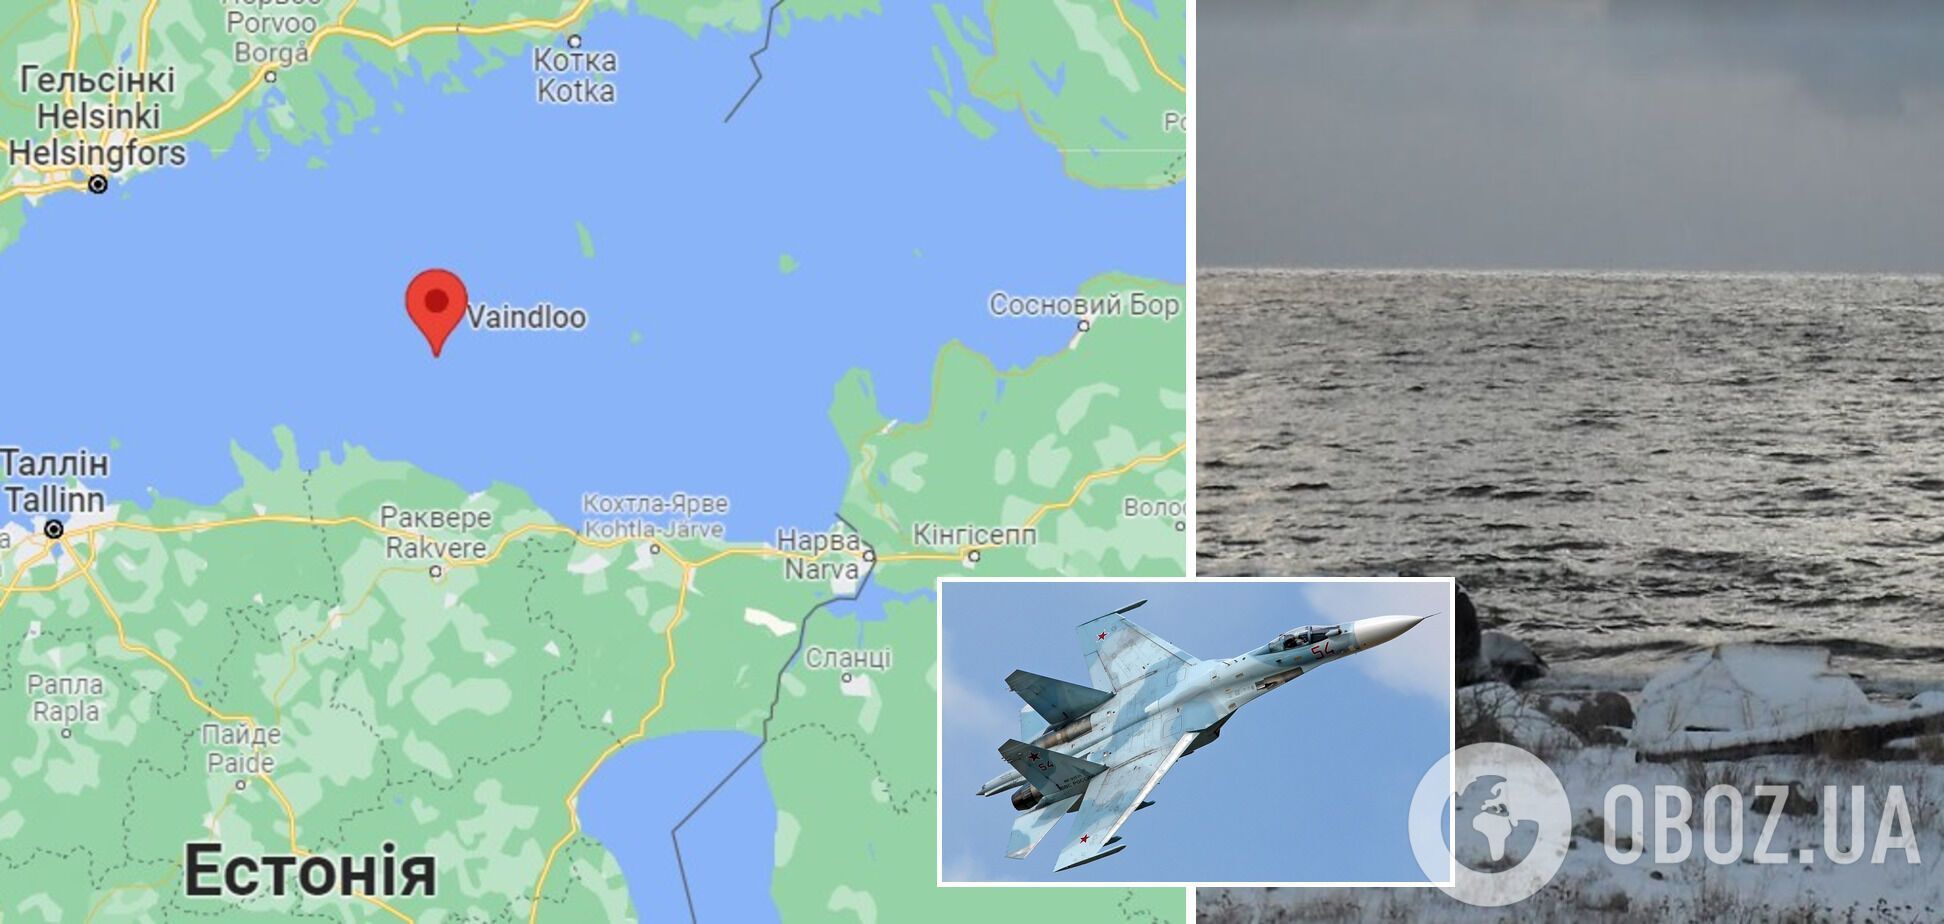 Истребитель Су-27 ВКС РФ нарушил воздушное пространство Эстонии возлеострова Вайндлоо в Финском заливе